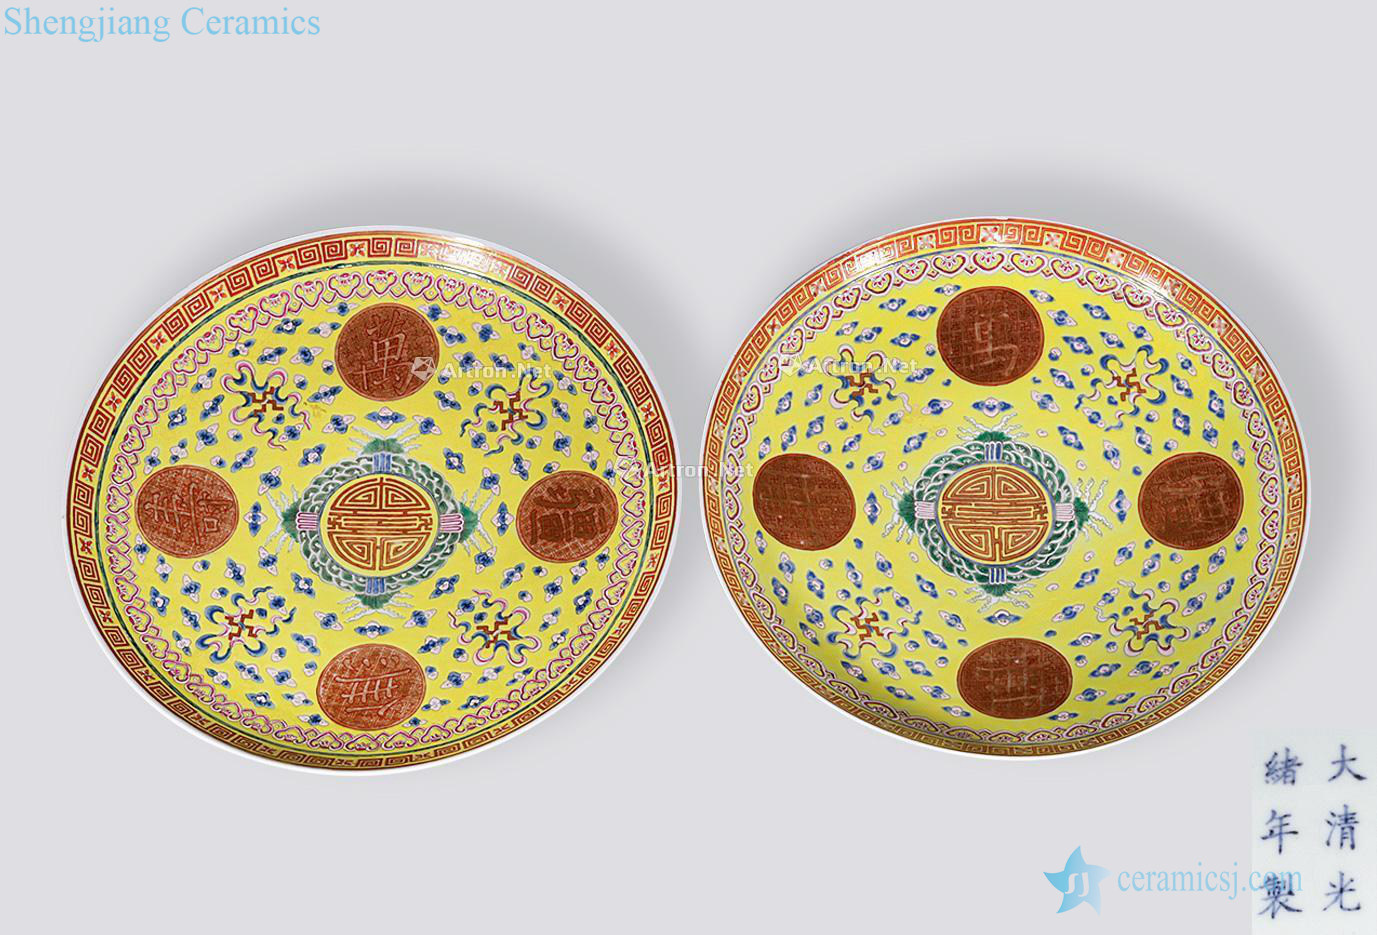 Qing guangxu Yellow glaze powder enamel plate (a)